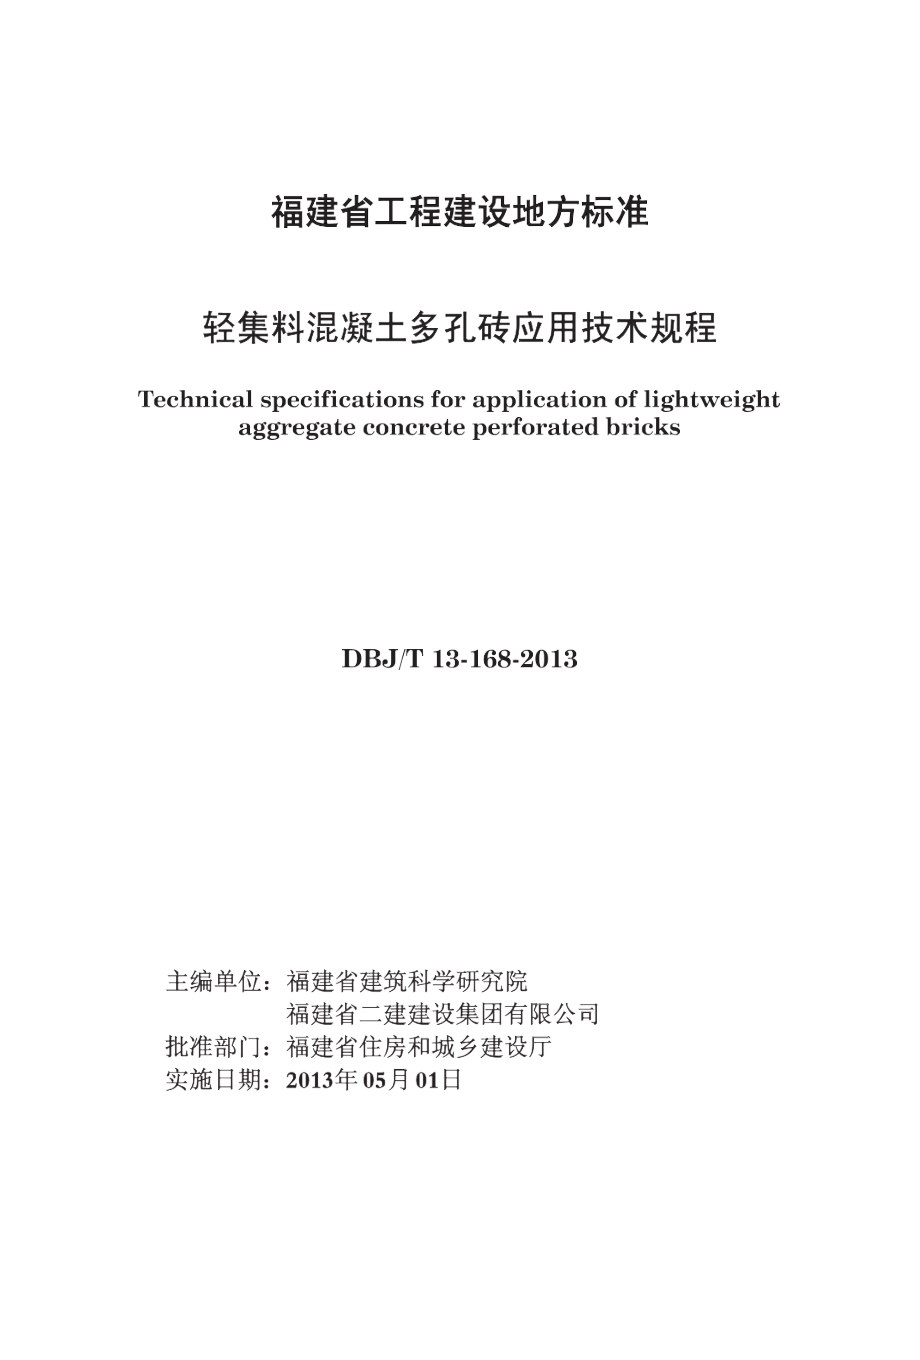 DBJ_T 13-168-2013 轻集料混凝土多孔砖应用技术规程_第1页